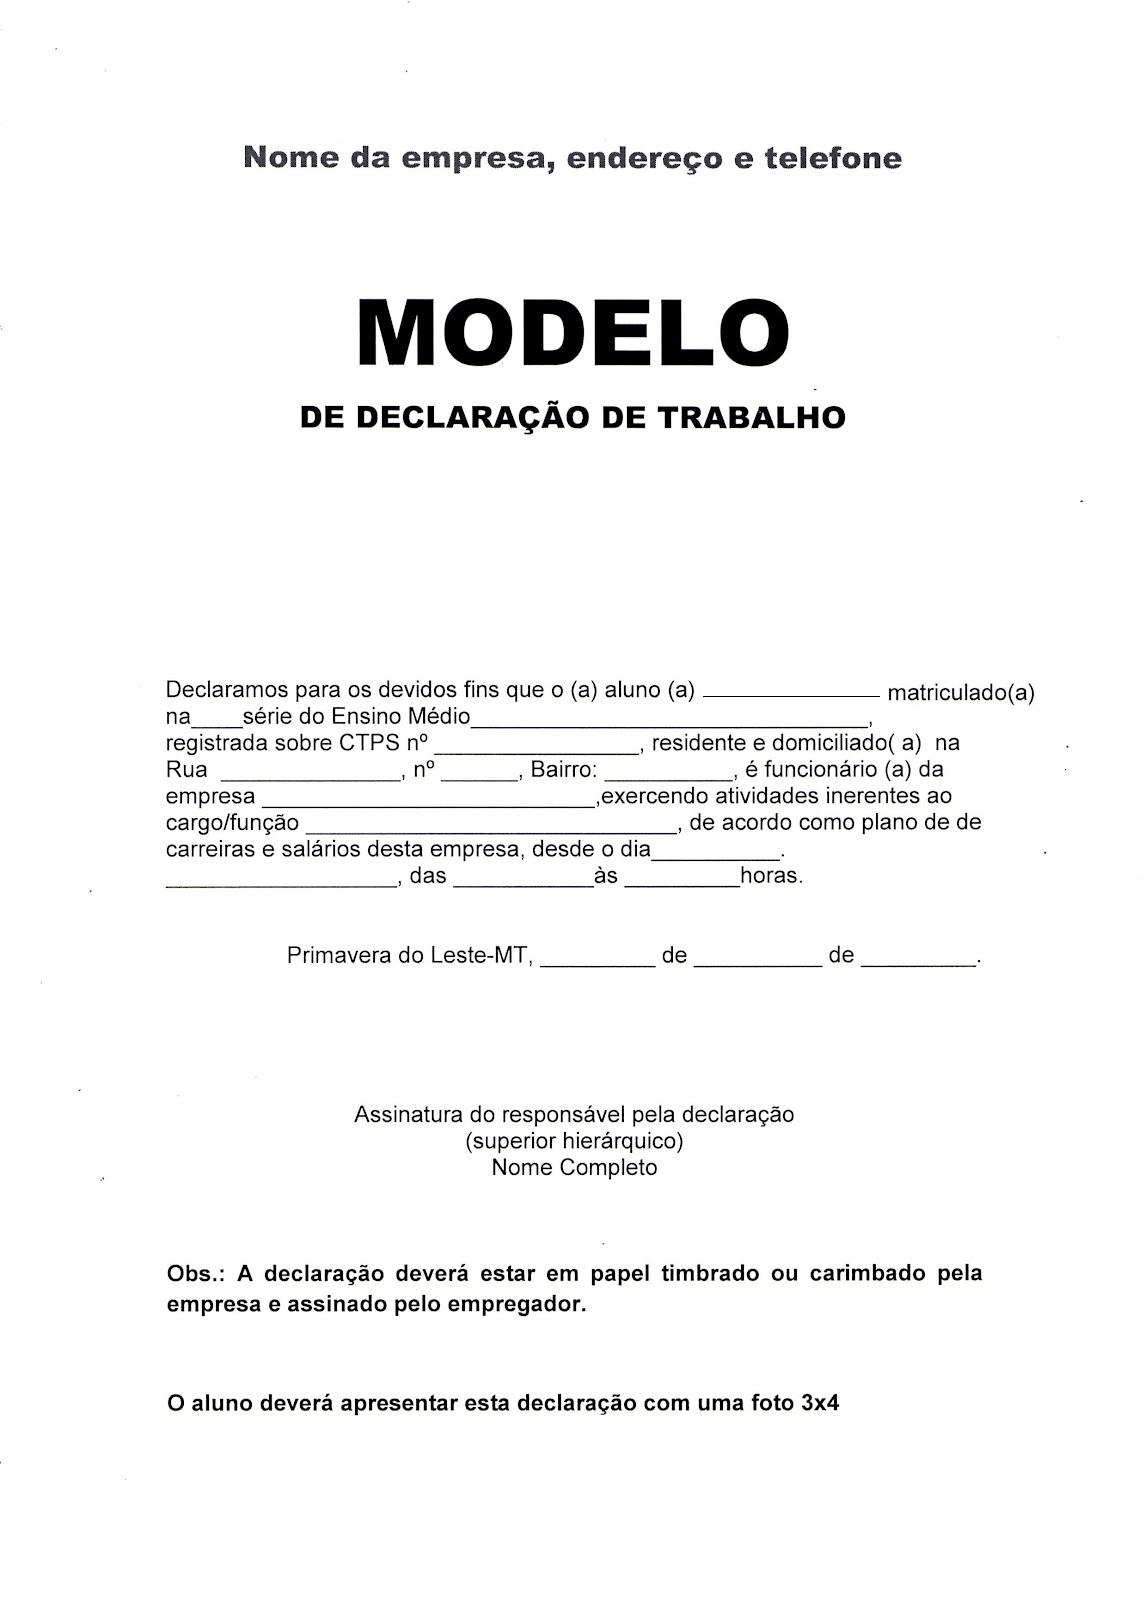 MODELO DE DECLARAÇÃO DE TRABALHO Scribd